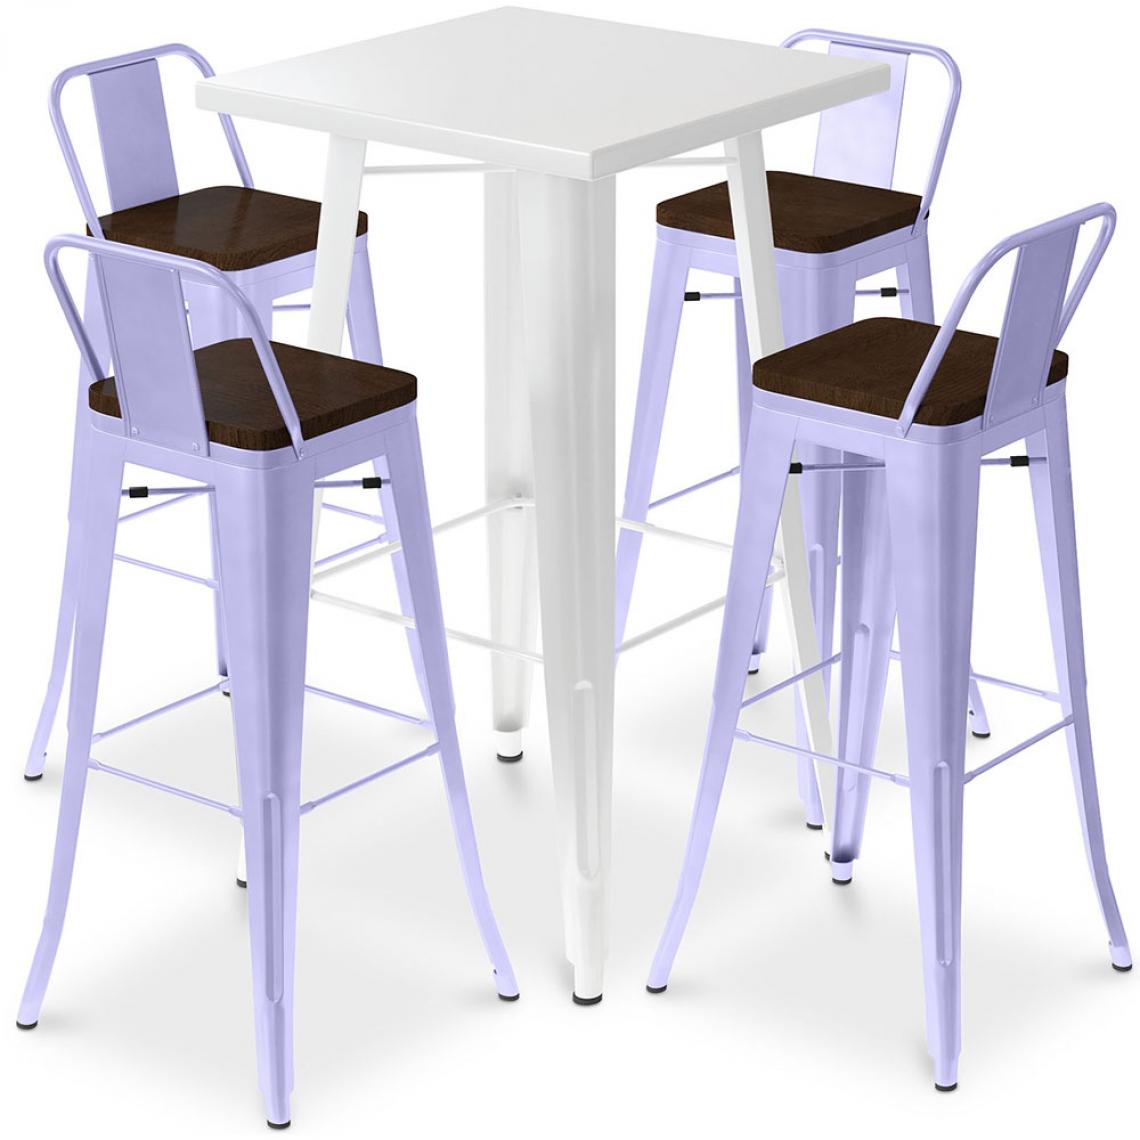 Iconik Interior - Table de bar blanche + 4 tabourets de bar en acier - Ensemble Bistrot Stylix Design industriel - Nouvelle édition Lavande - Tabourets